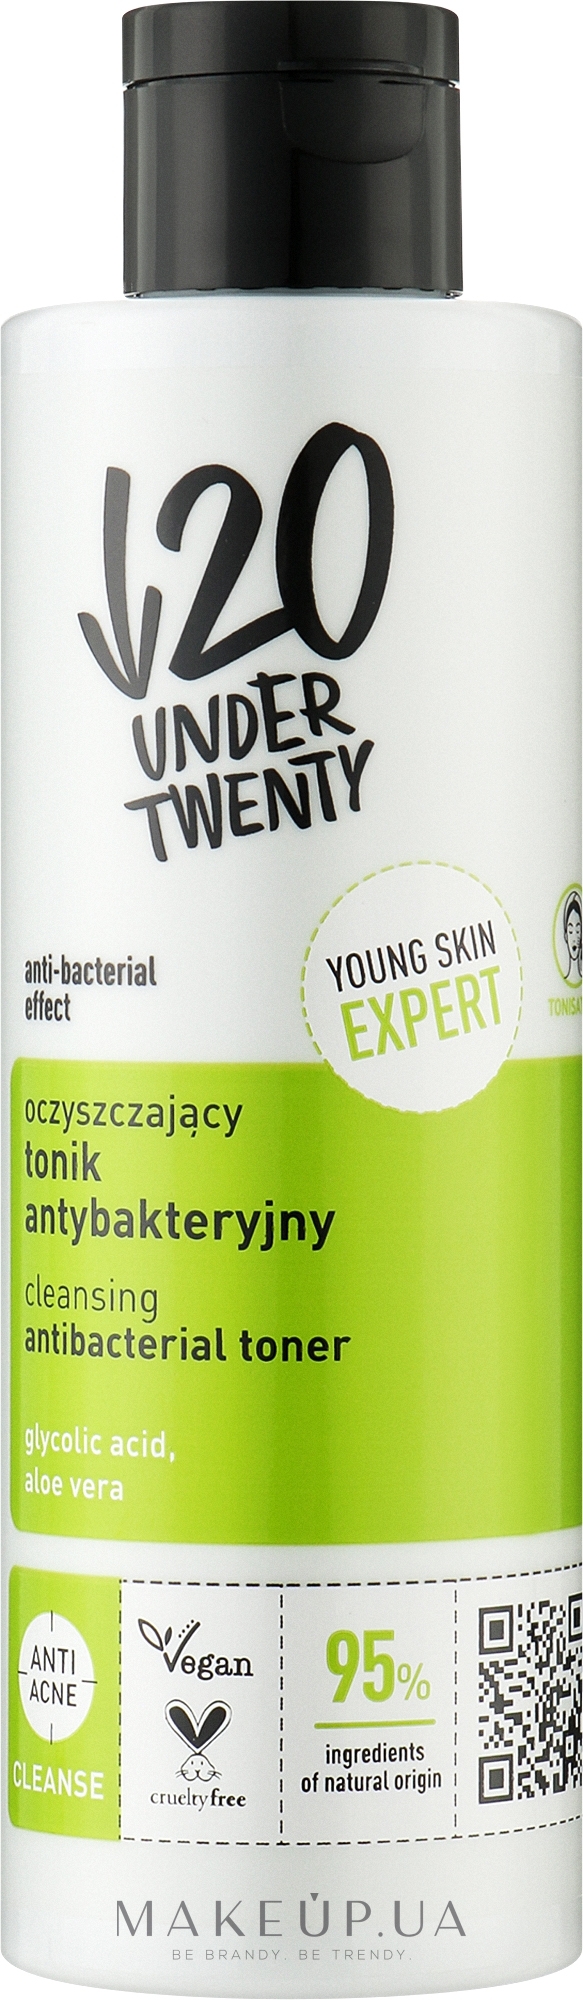 Очищающий антибактериальный тоник для лица - Under Twenty Anti! Acne Cleansing Antibacterial Toner — фото 200ml